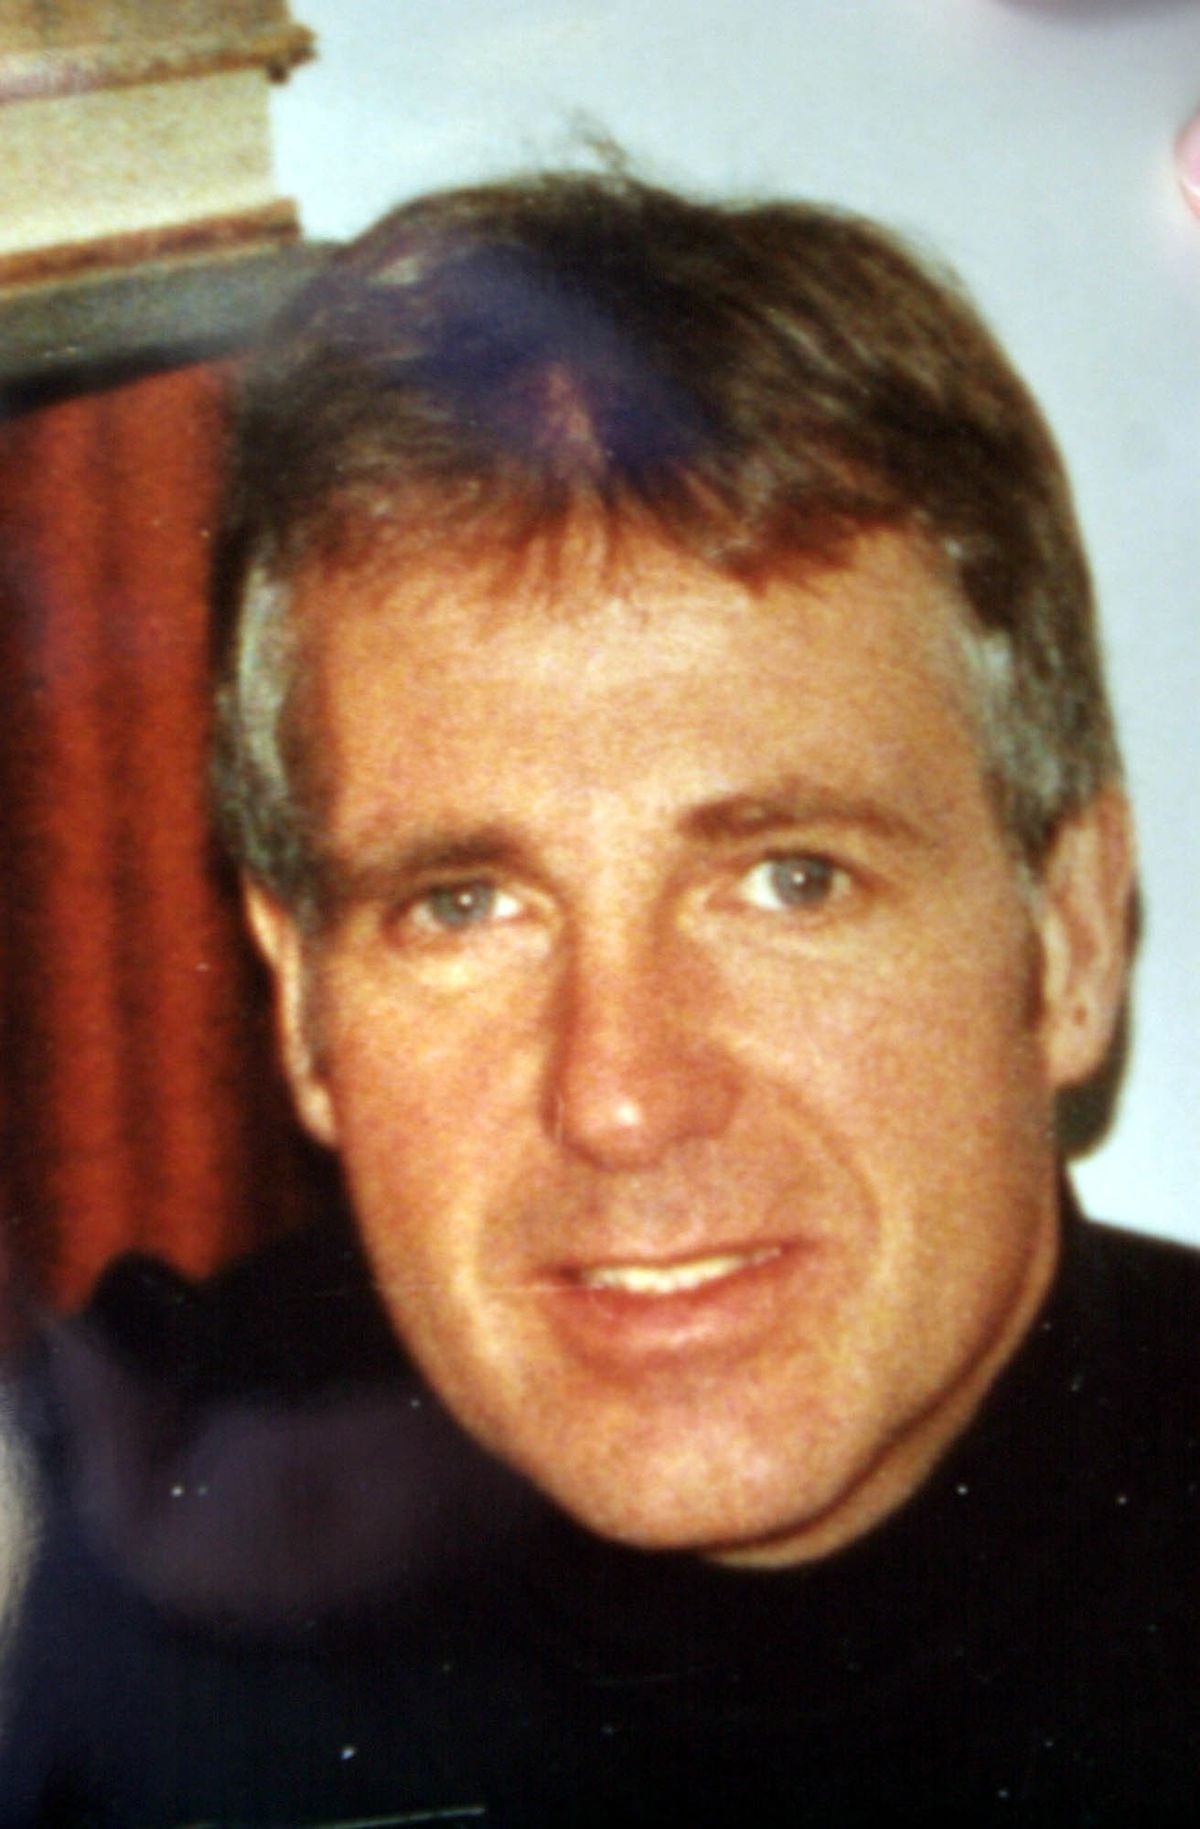 Pc Malcolm Walker was killed in 2001